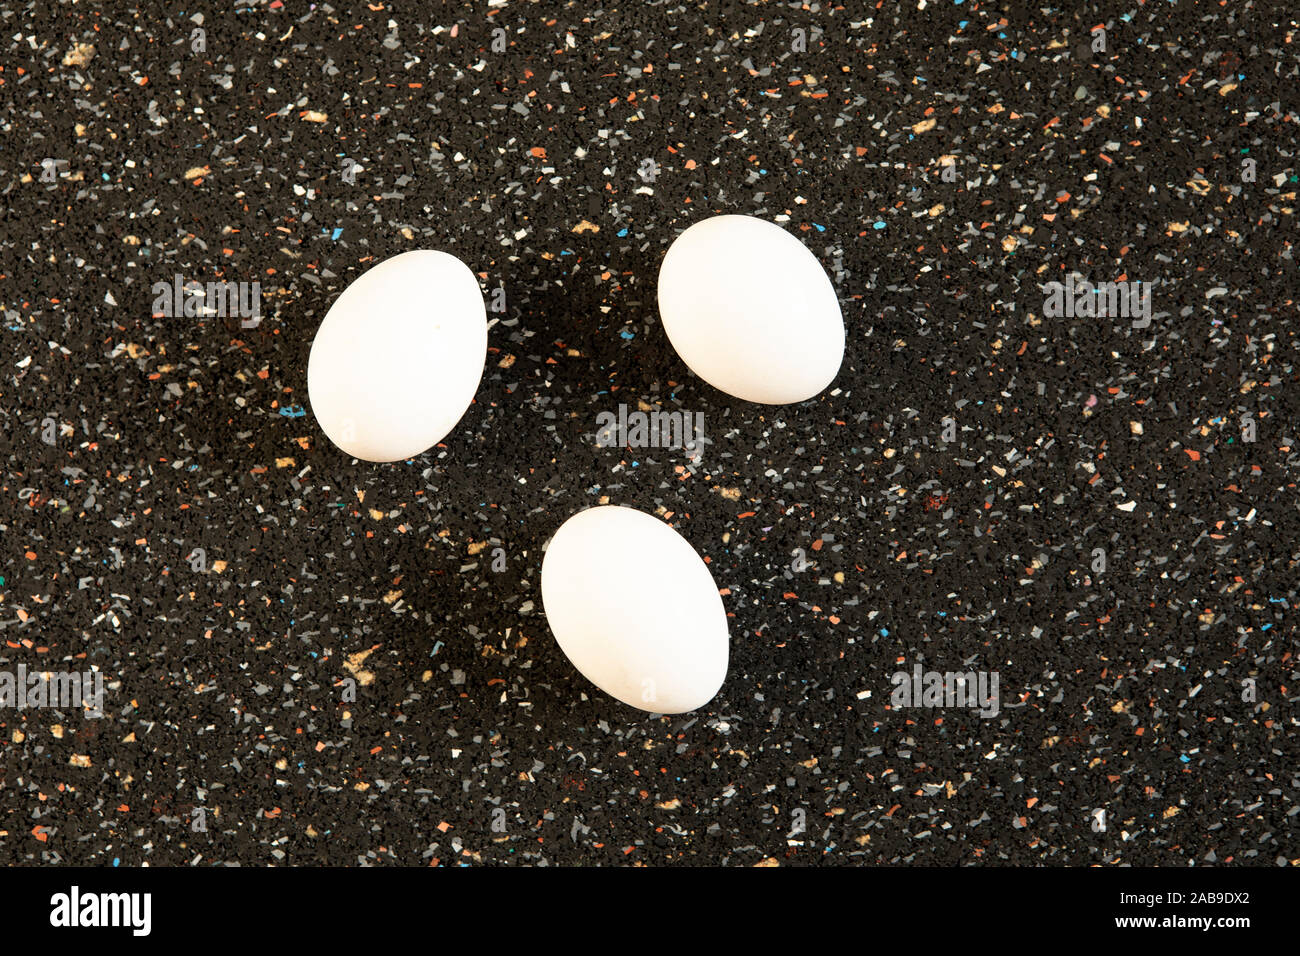 Abstrakte Anordnung mit Baum Eier liegt auf Schwarz speckle Hintergrund. Minimalistisch weiße Eier flach noch leben, essen Kunst Pop Art Stil. Neues Leben c Stockfoto